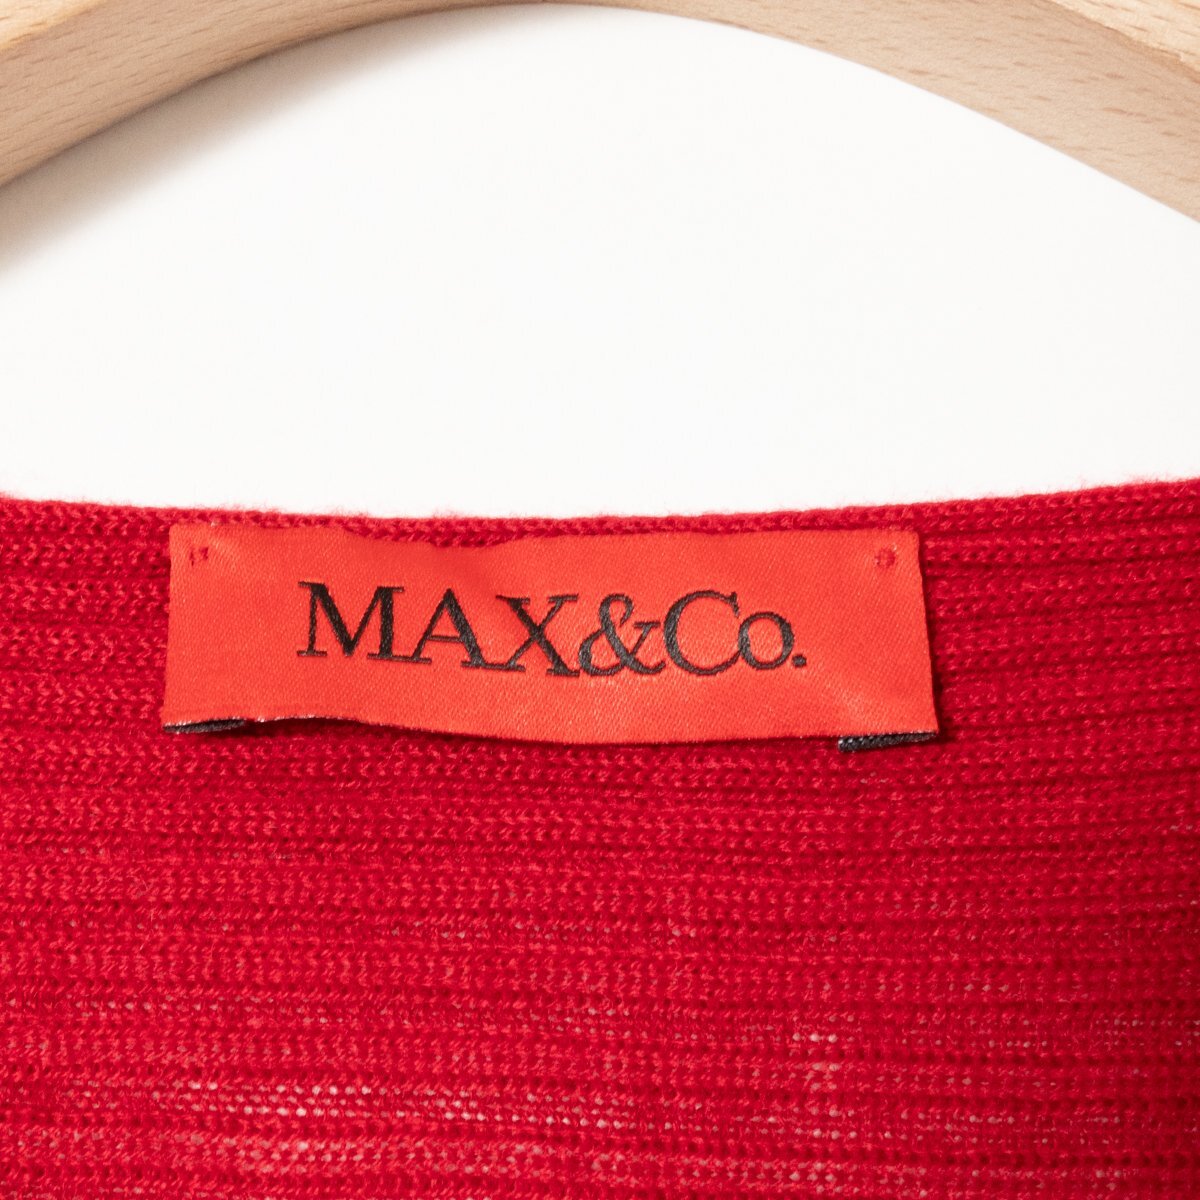 MAX&Co. マックスアンドコー ボートネック ニット セーター トップス 長袖 薄手 USA S アクリル レッド 赤 綺麗め カジュアル_画像2